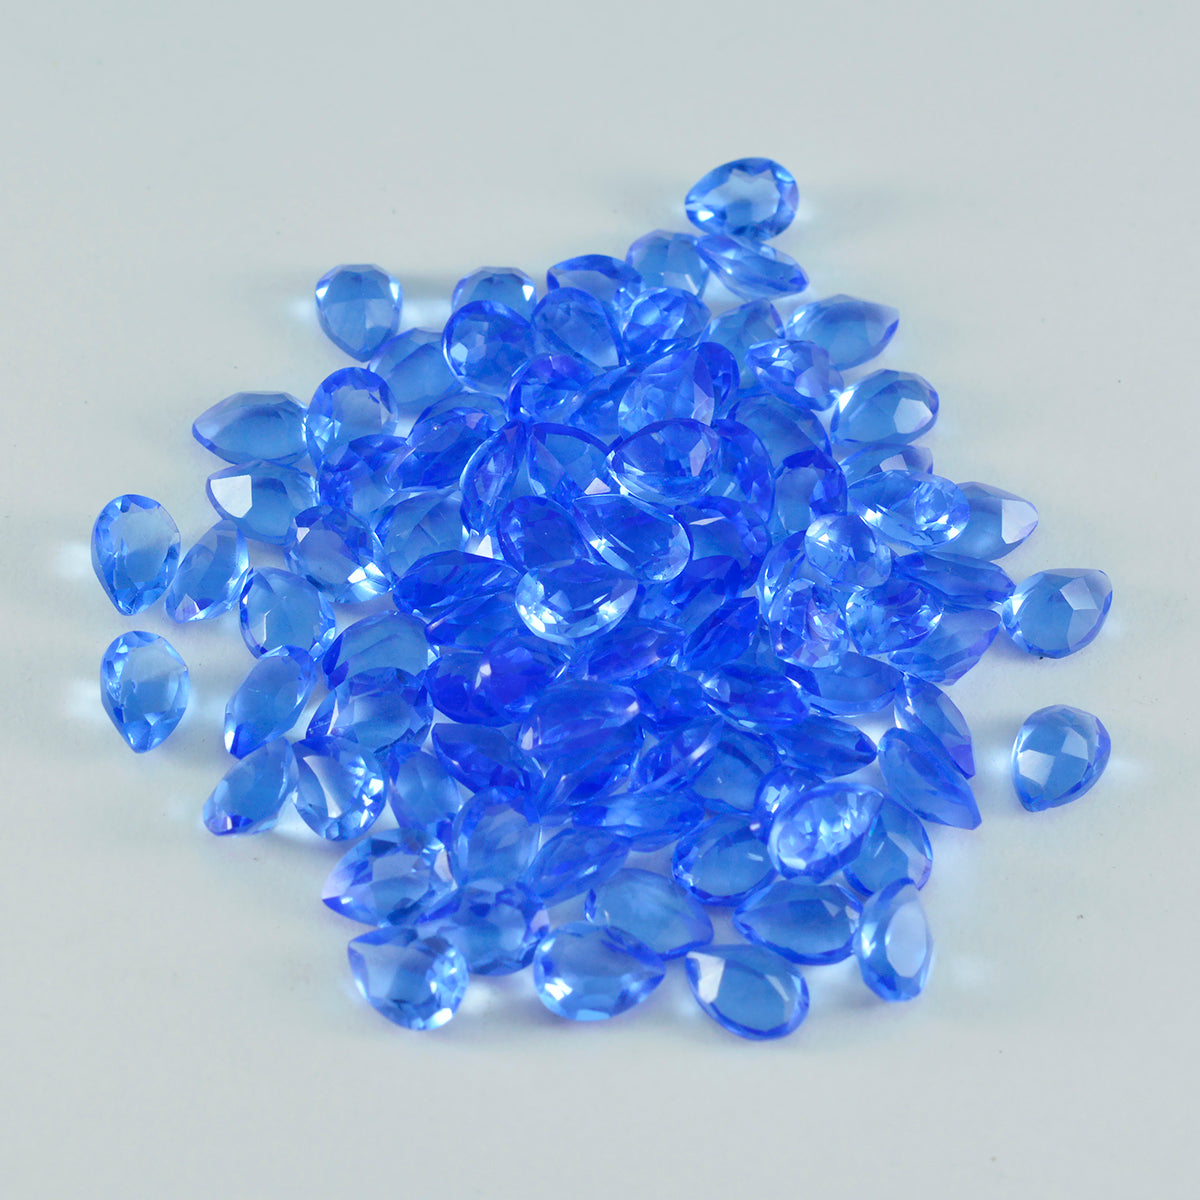 Riyogems 1 Stück blauer Saphir, CZ, facettiert, 3 x 5 mm, Birnenform, hübscher, hochwertiger, loser Edelstein